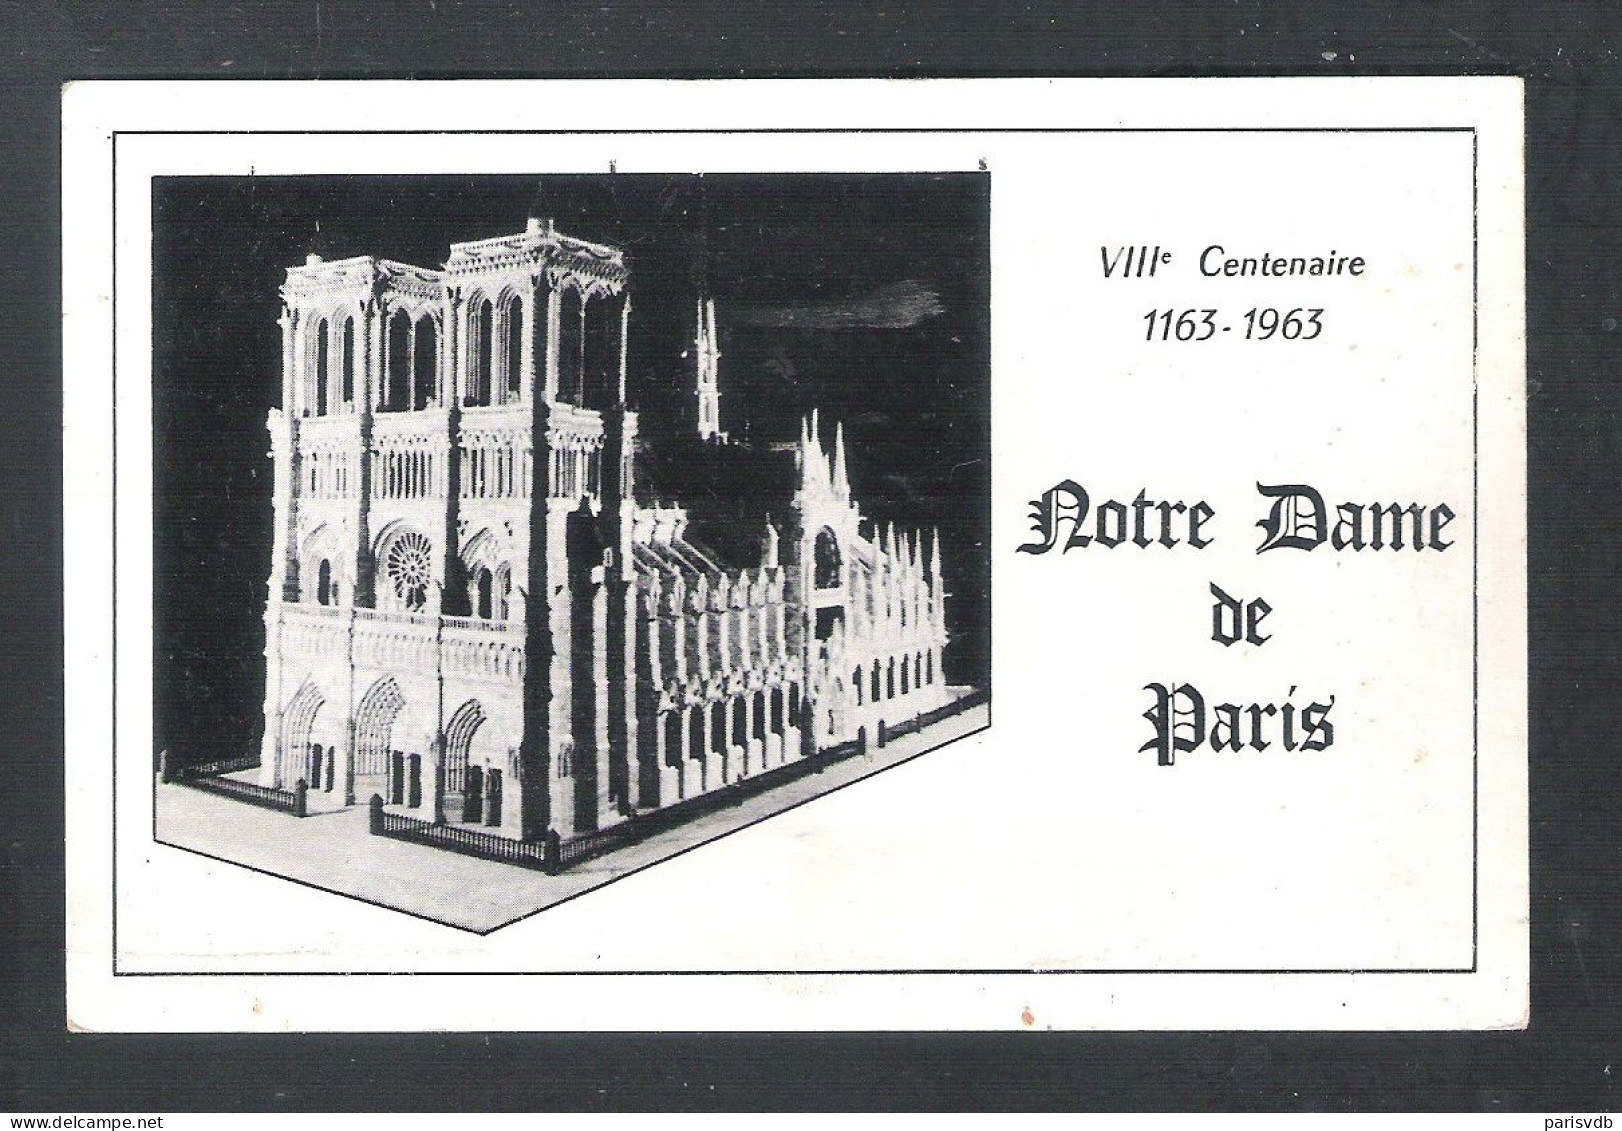 PARIS - NOTRE DAME DE PARIS - VIIIe CENTENAIRE  1163 - 1963   (FR 20.209) - Notre Dame Von Paris